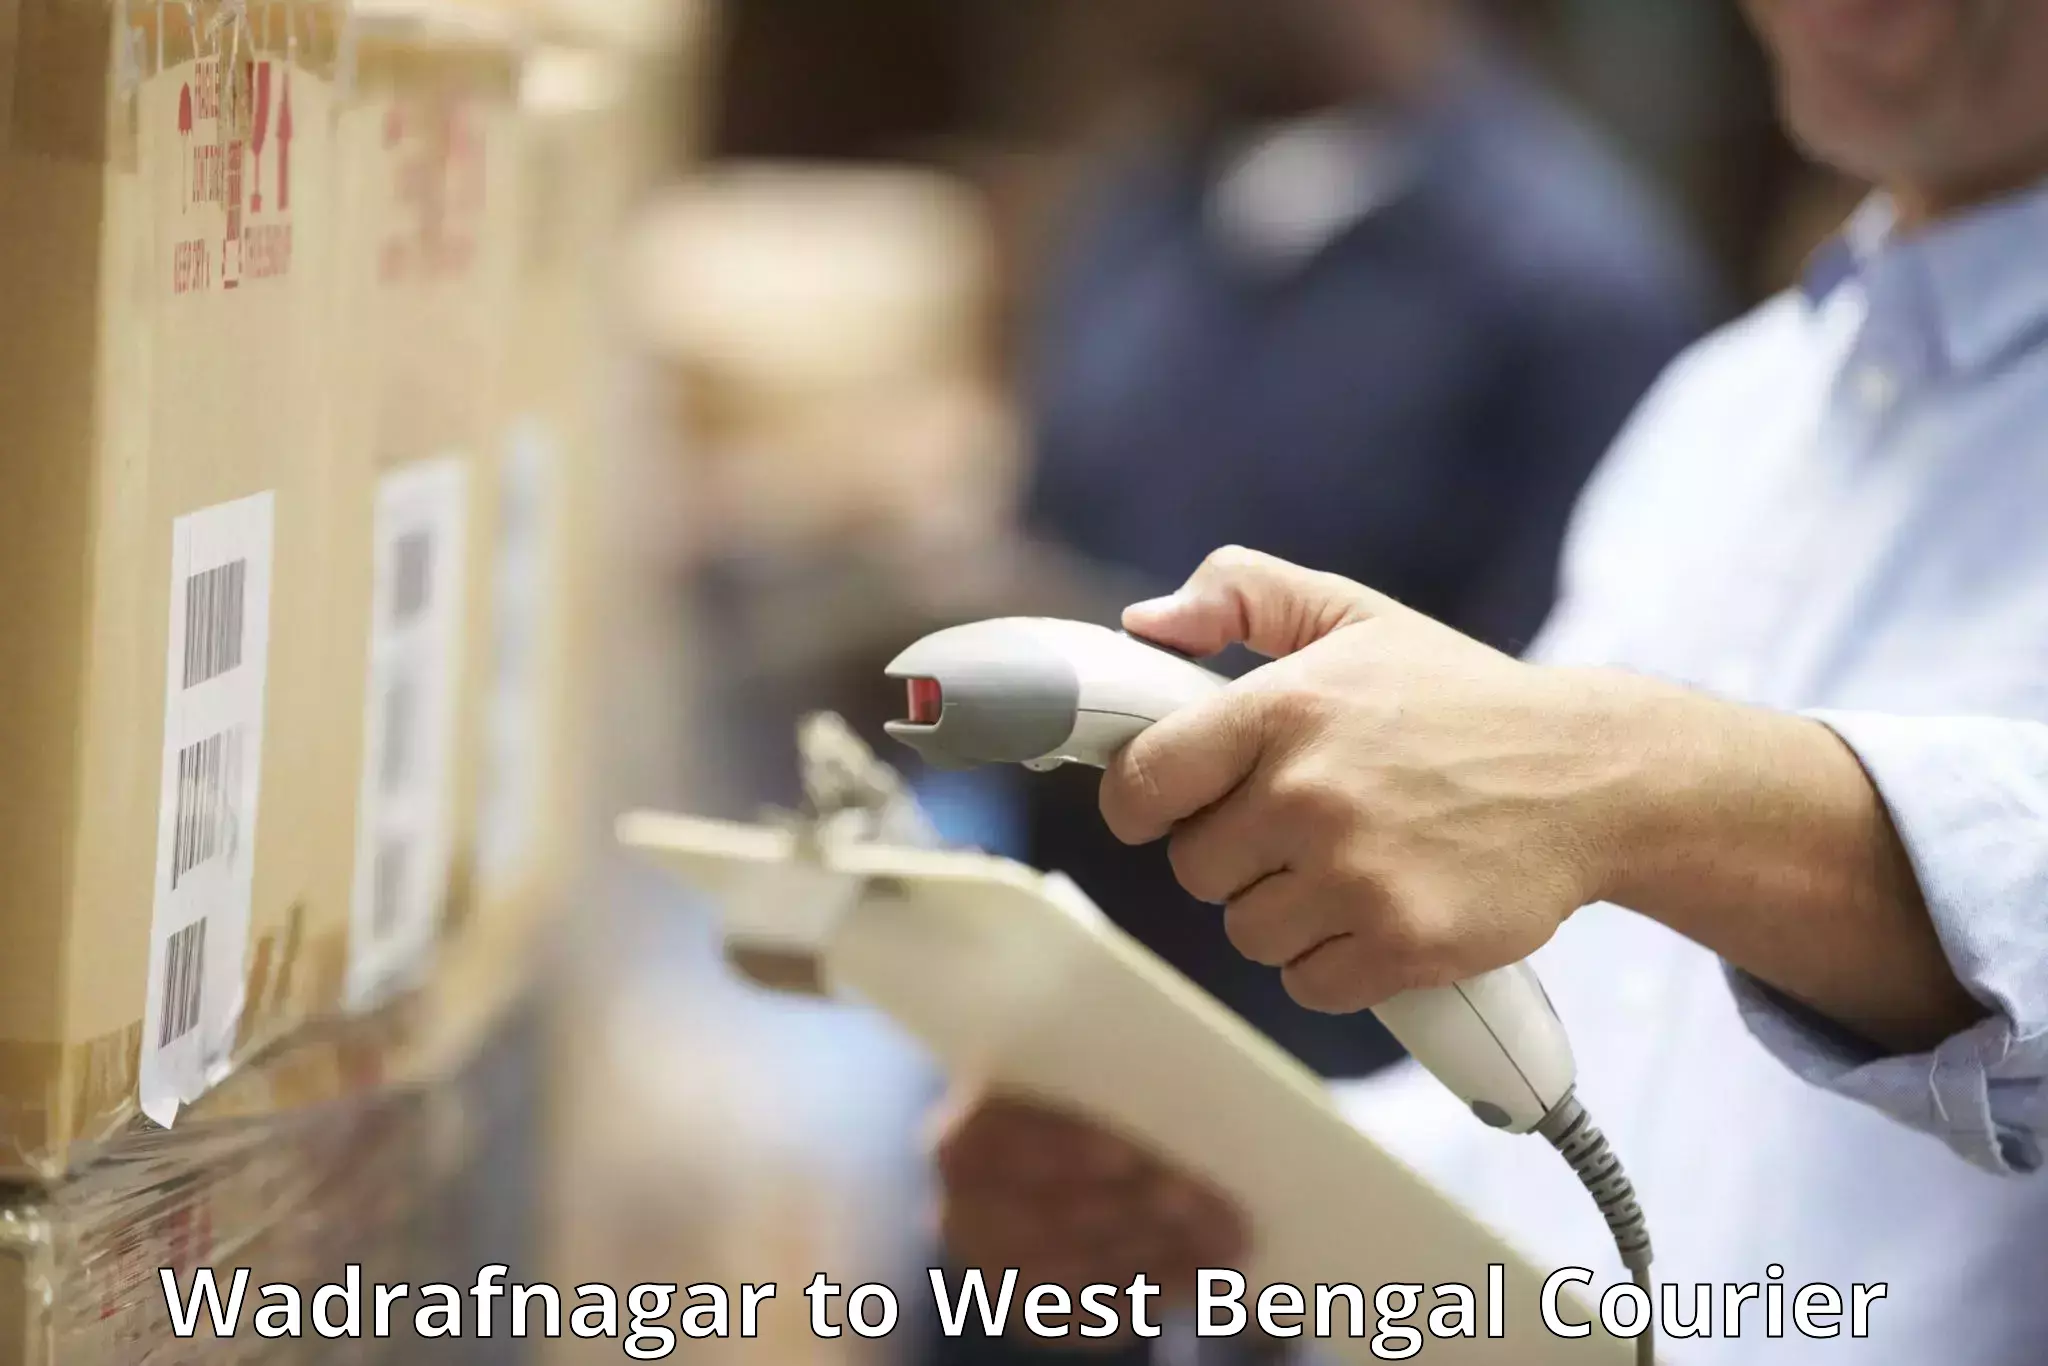 Baggage transport technology Wadrafnagar to West Bengal